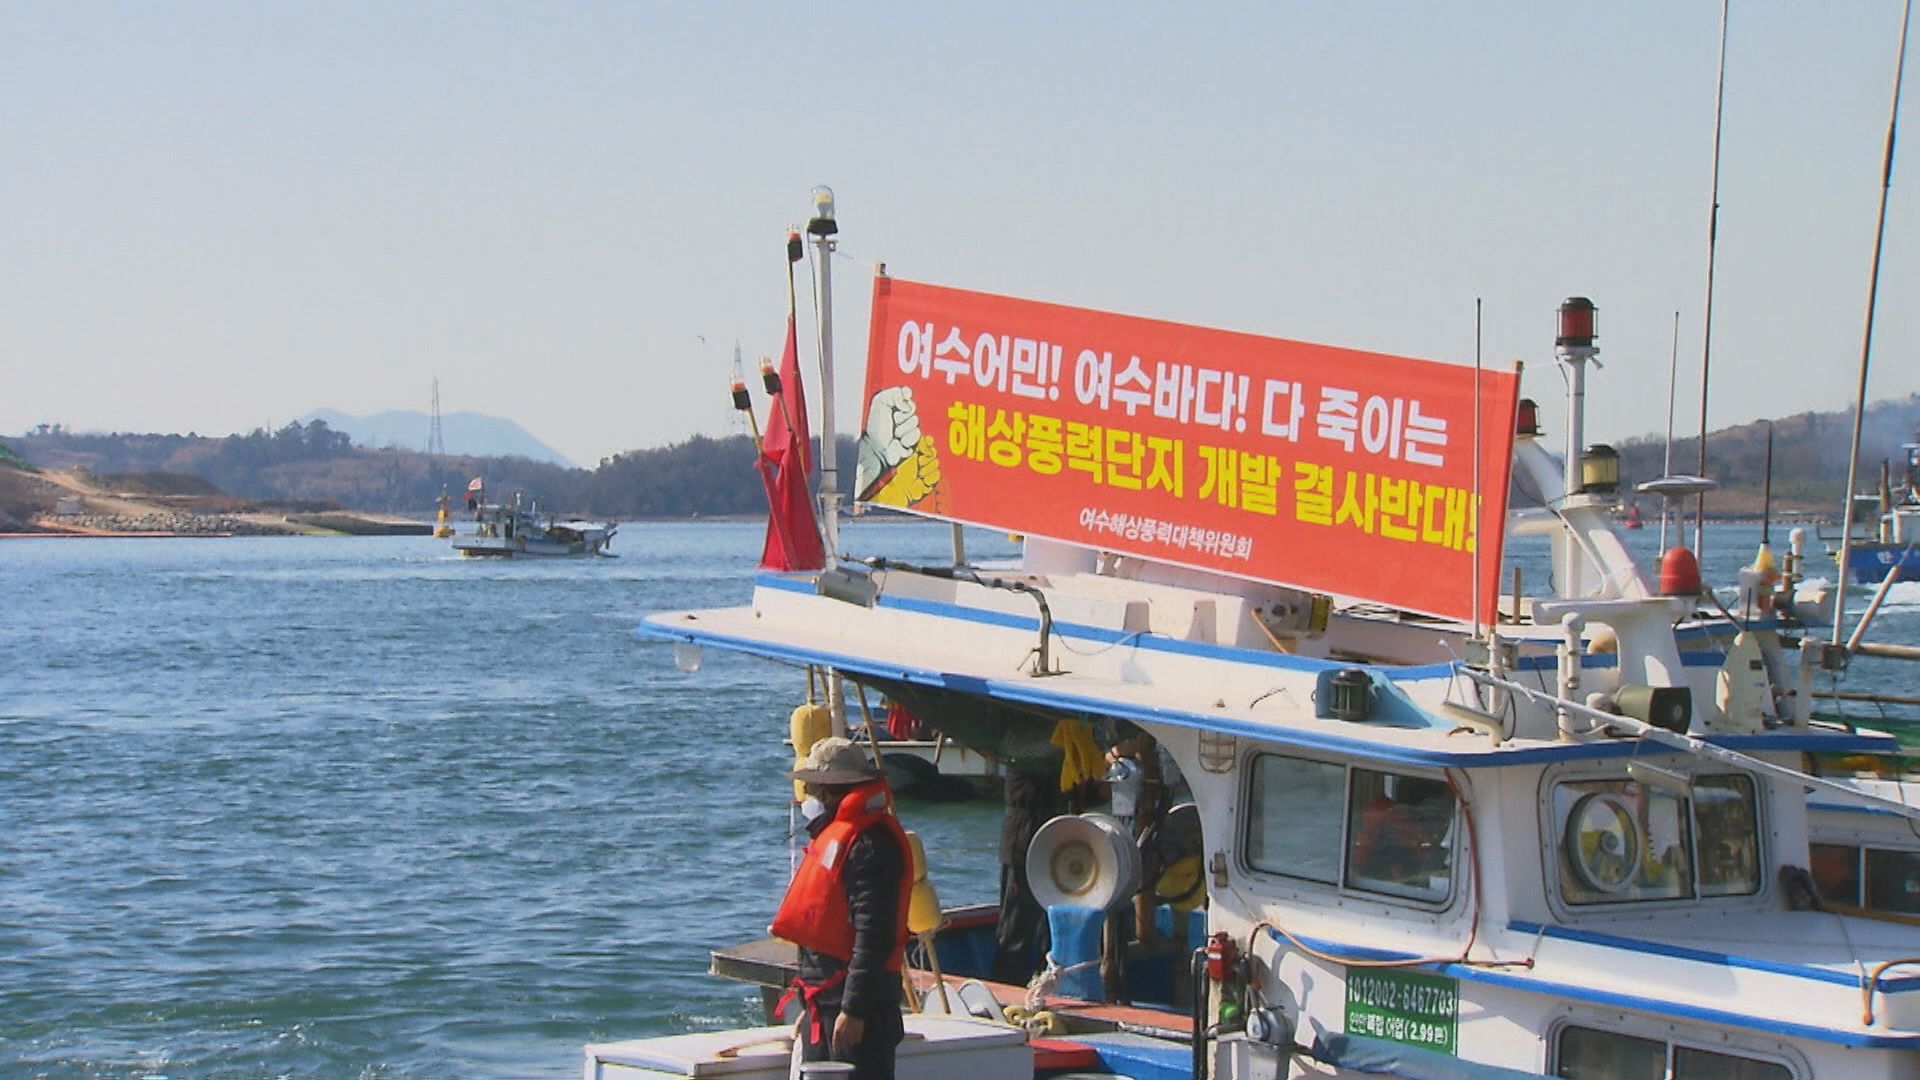 해상 풍력단지 사업을 반대하며 어선을 바다에 띄우는 해상 시위에 나선 여수 어민들.